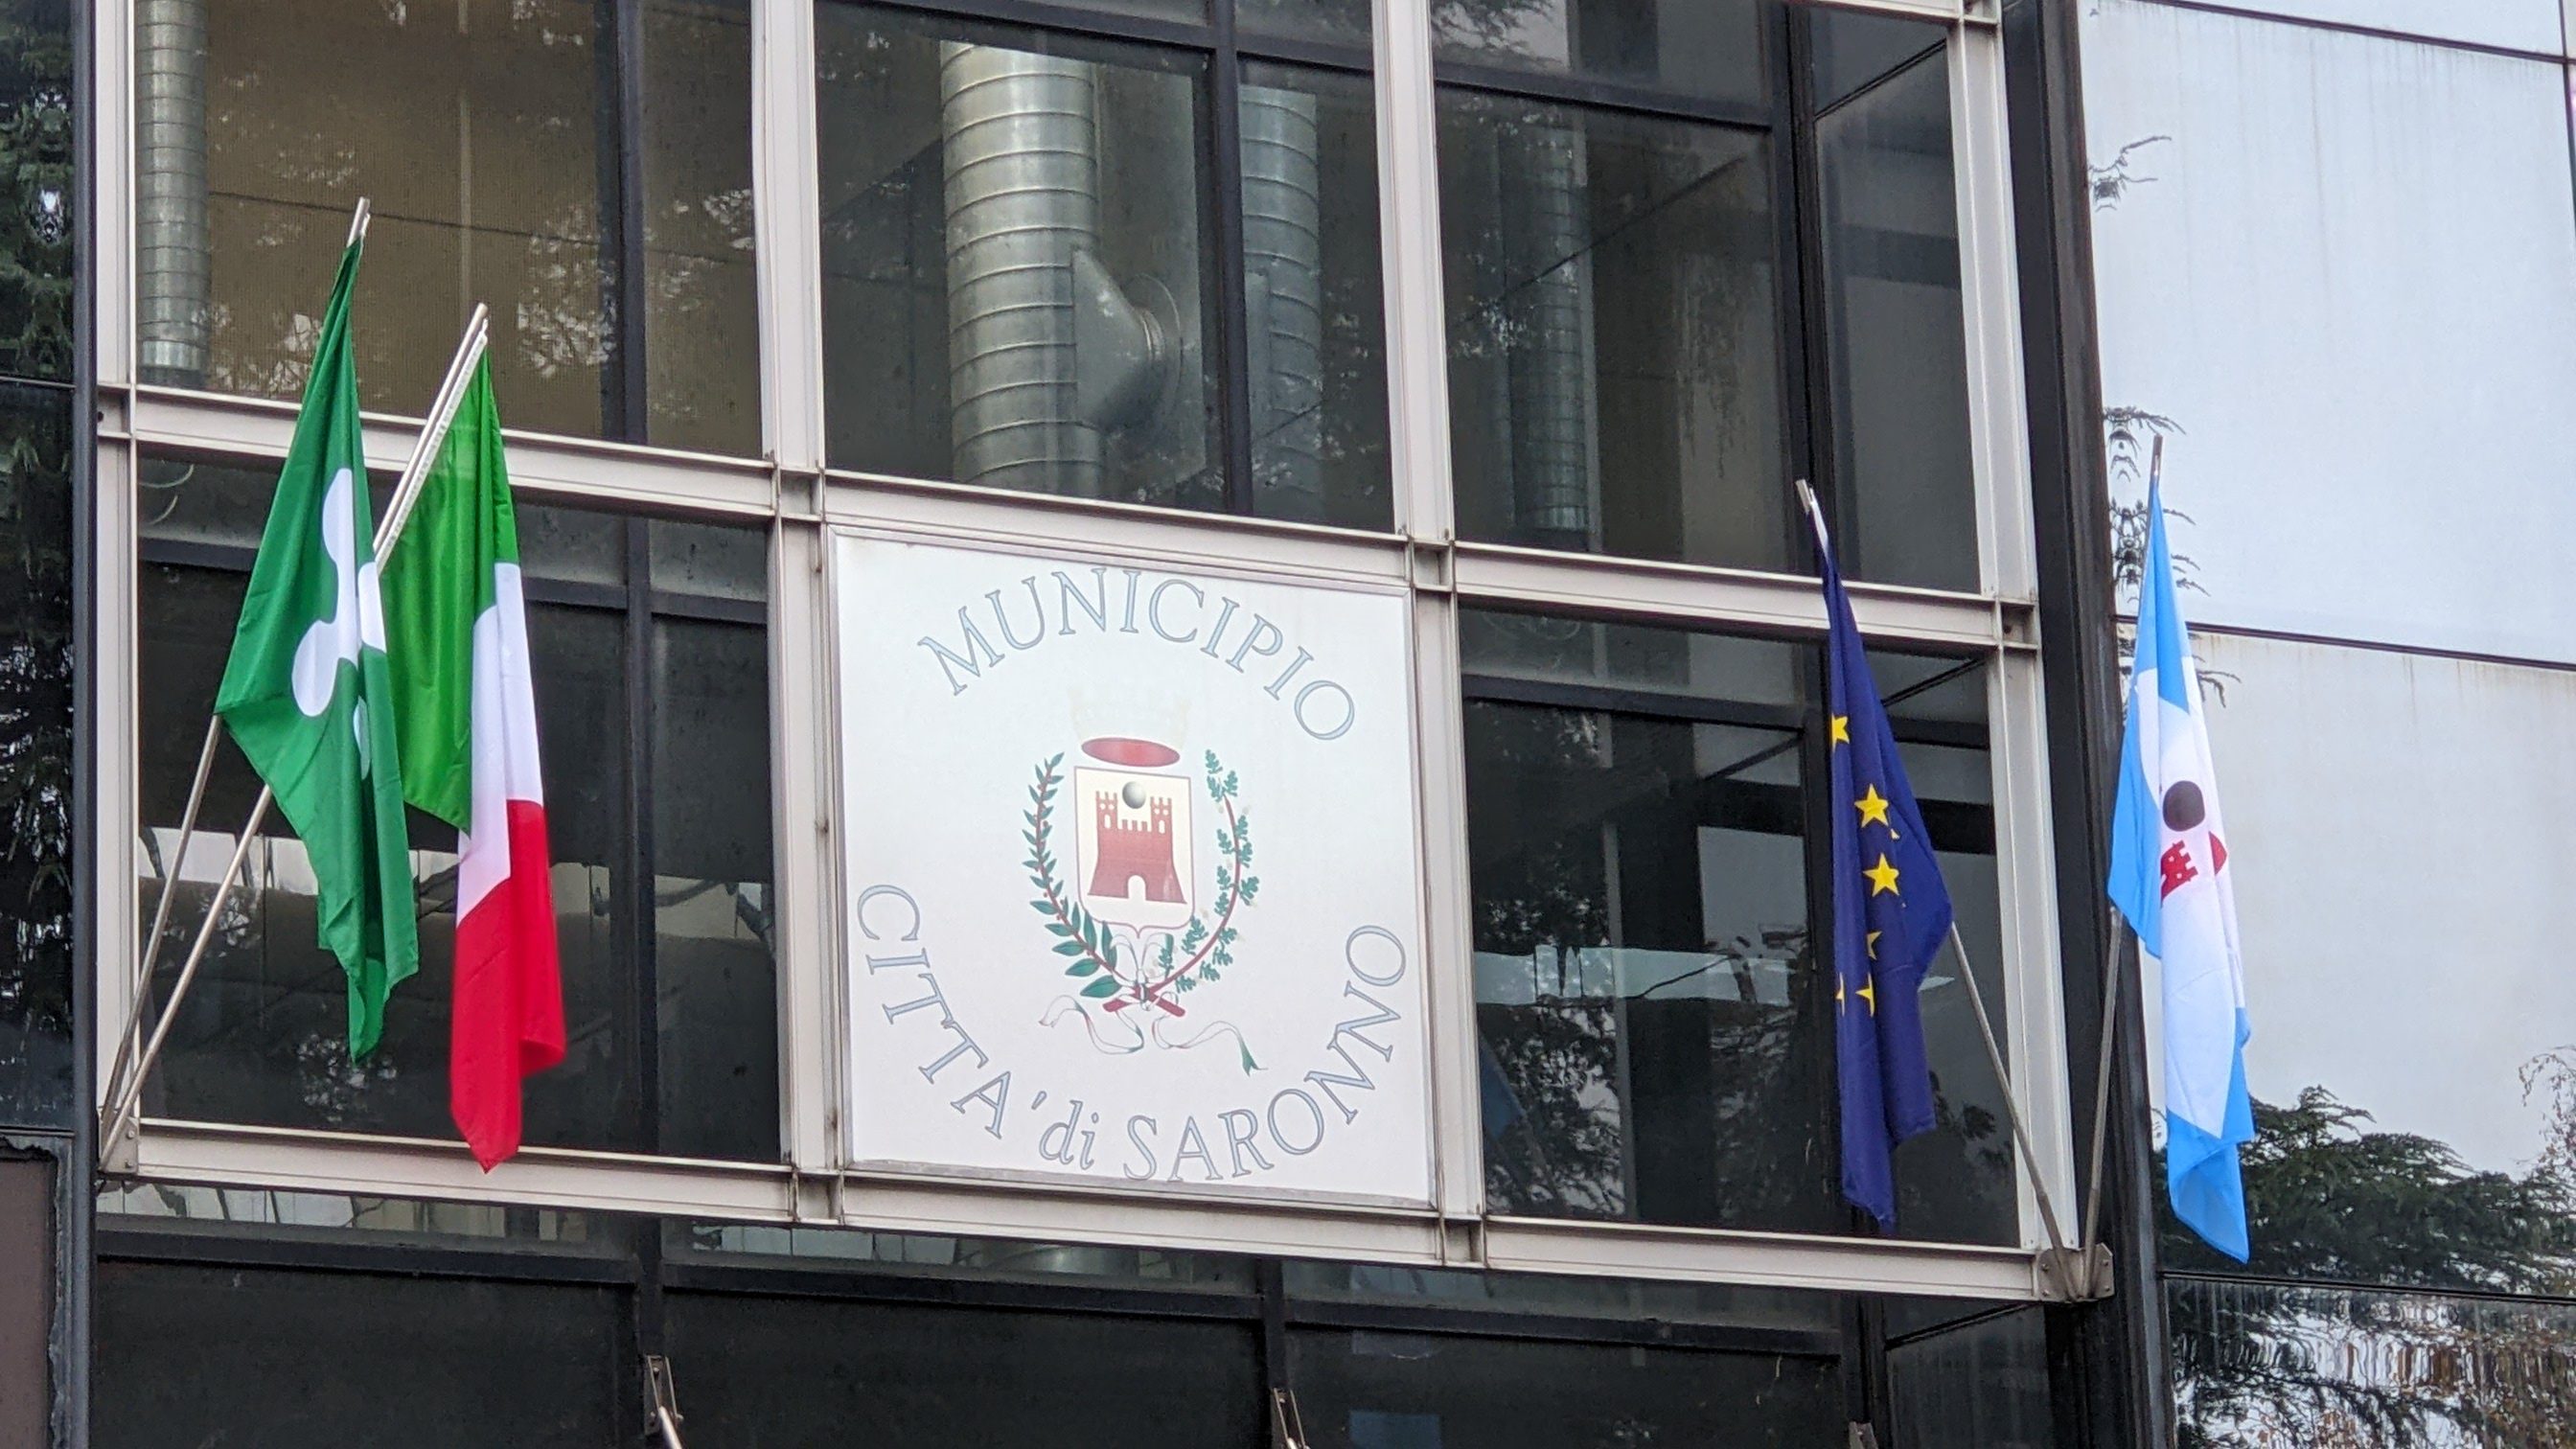 Saronno-municipio: domani assemblea dei dipendenti dei servizi demografici per stato di agitazione